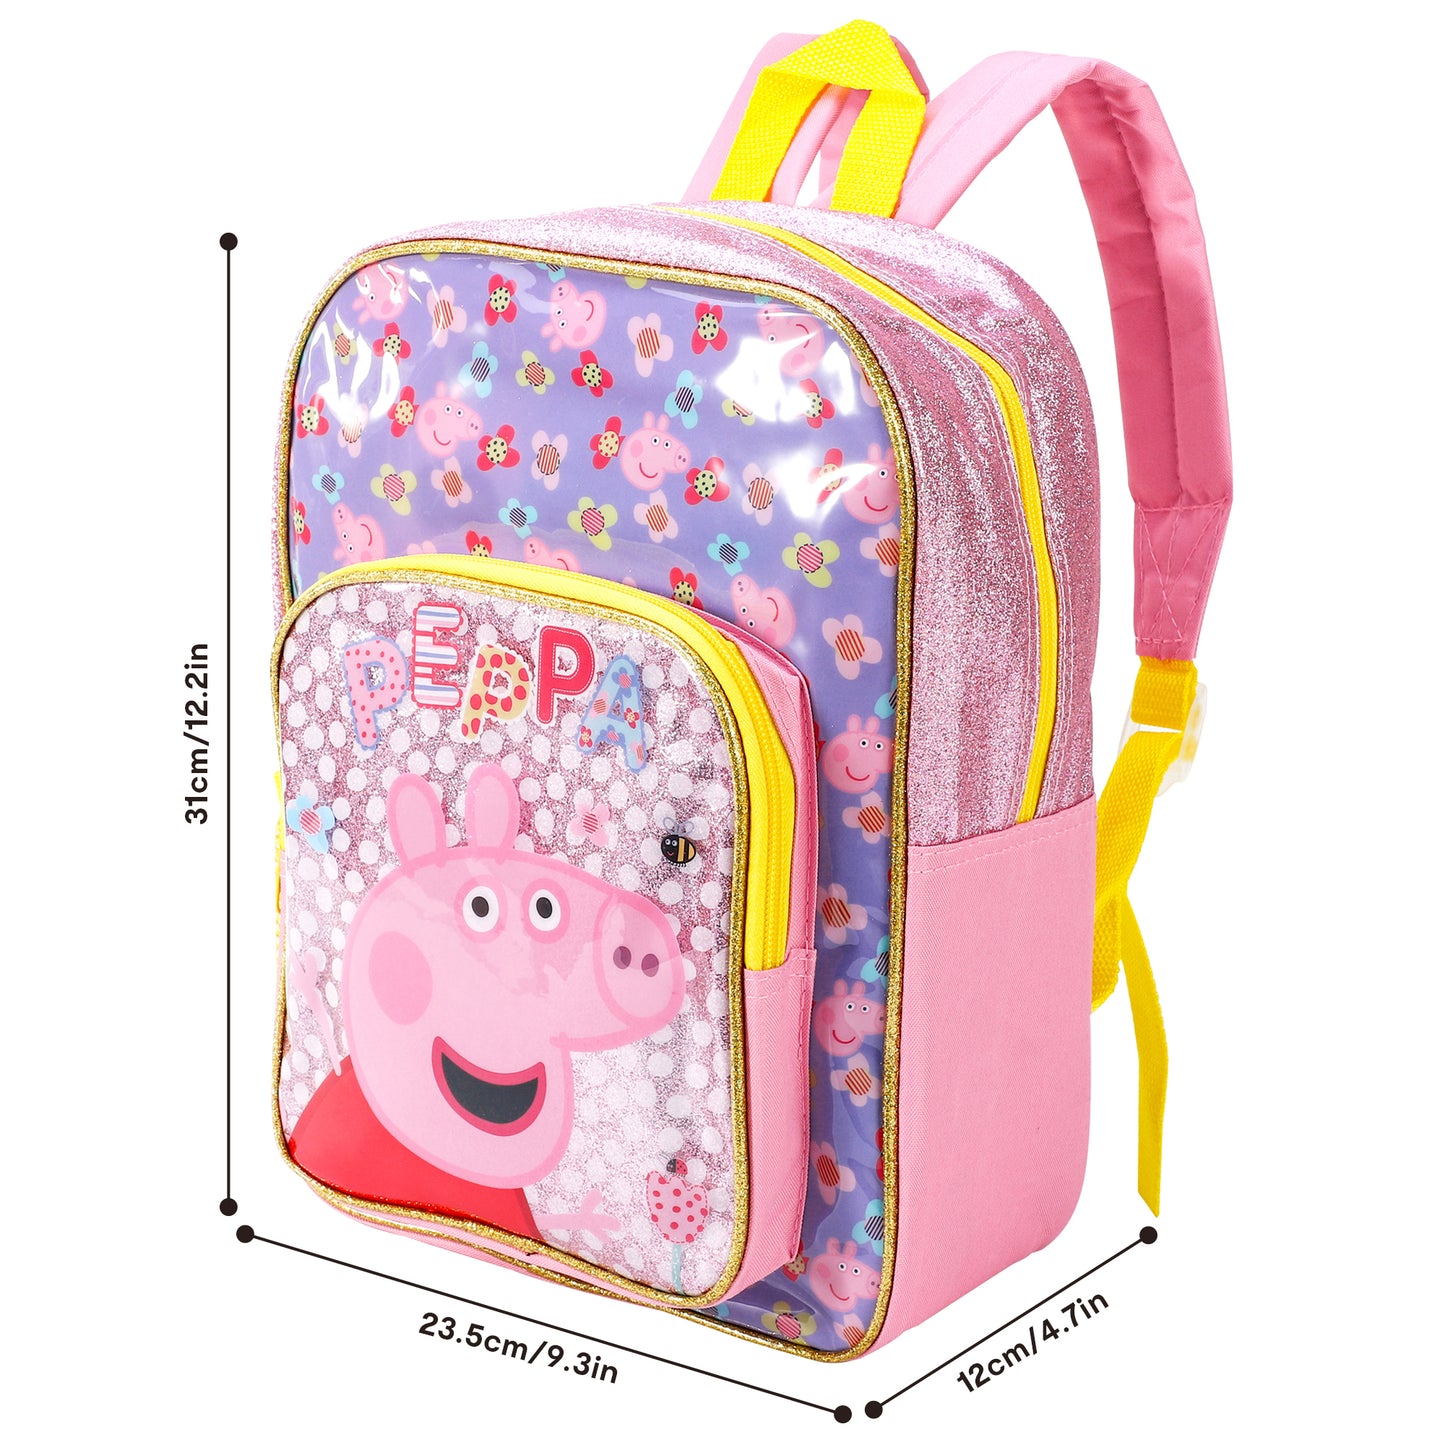 Peppa Pig Girl’s Backpack School Bag “Flowers”